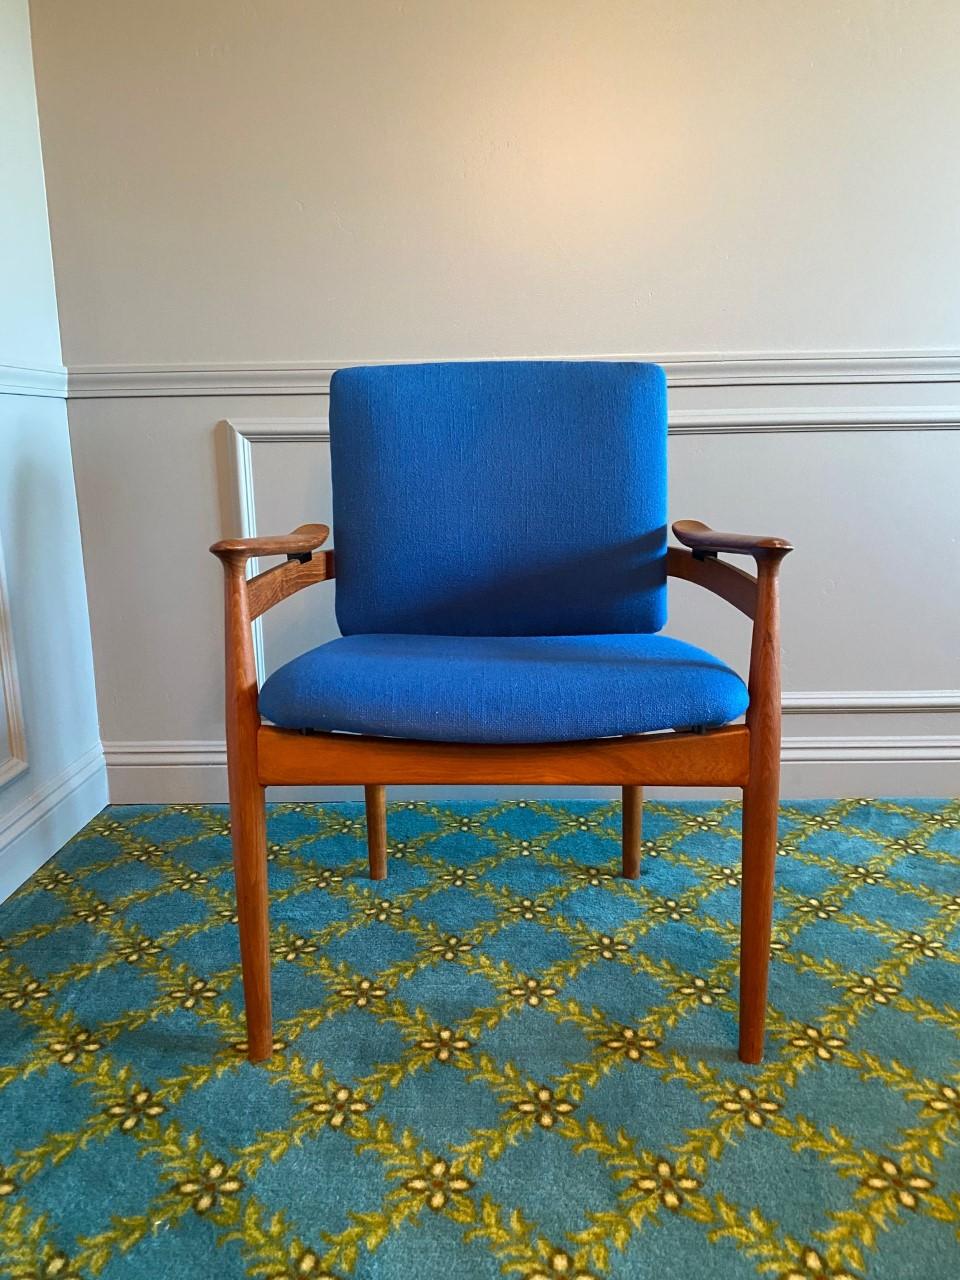 Die von Finn Juhl für France & Son entworfenen und von John Stuart importierten Stühle bieten großzügige und bequeme Sitze, die in Teakholzrahmen schweben. Sie sind mit einem schönen blauen Original-Bouclé-Stoff gepolstert. In sehr gutem Zustand.